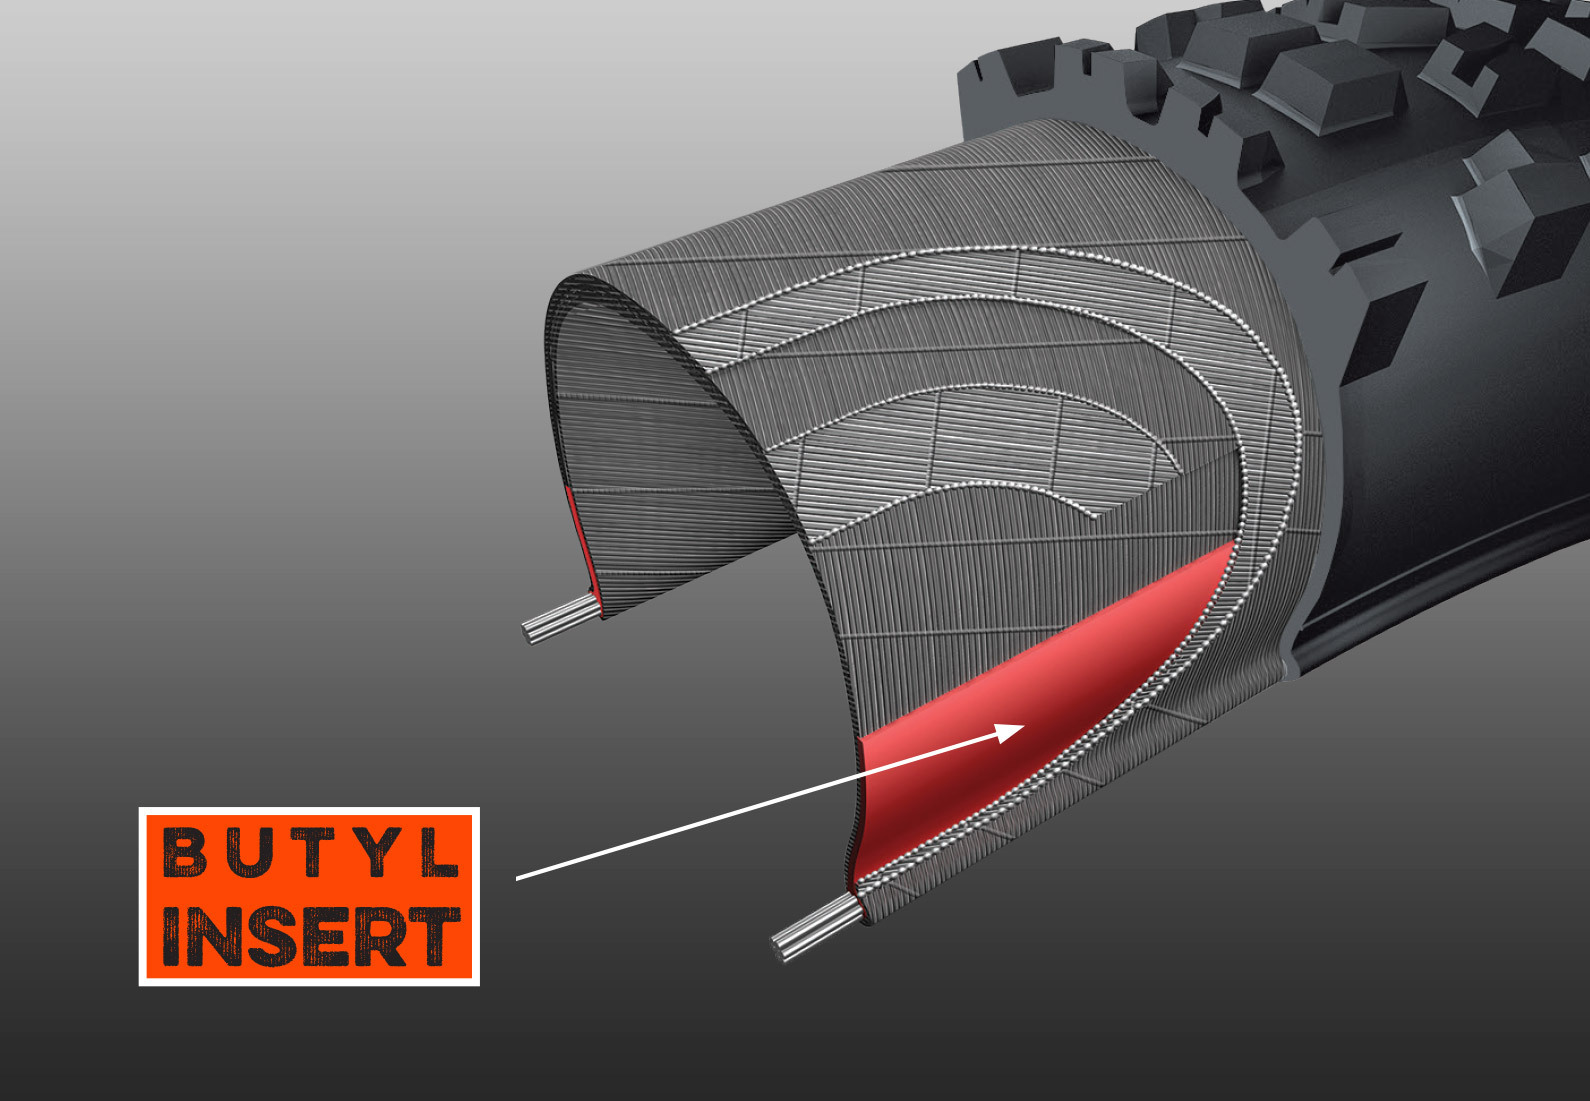 BUTYL INSERT - Extra kus butylkaučuku, který se táhne od patky sjezdové pneumatiky až po boční stěnu.&nbsp;Butylová vložka pomáhá předcházet vzniku špetek, chrání ráfek před nárazem a zvyšuje stabilitu boční stěny.
